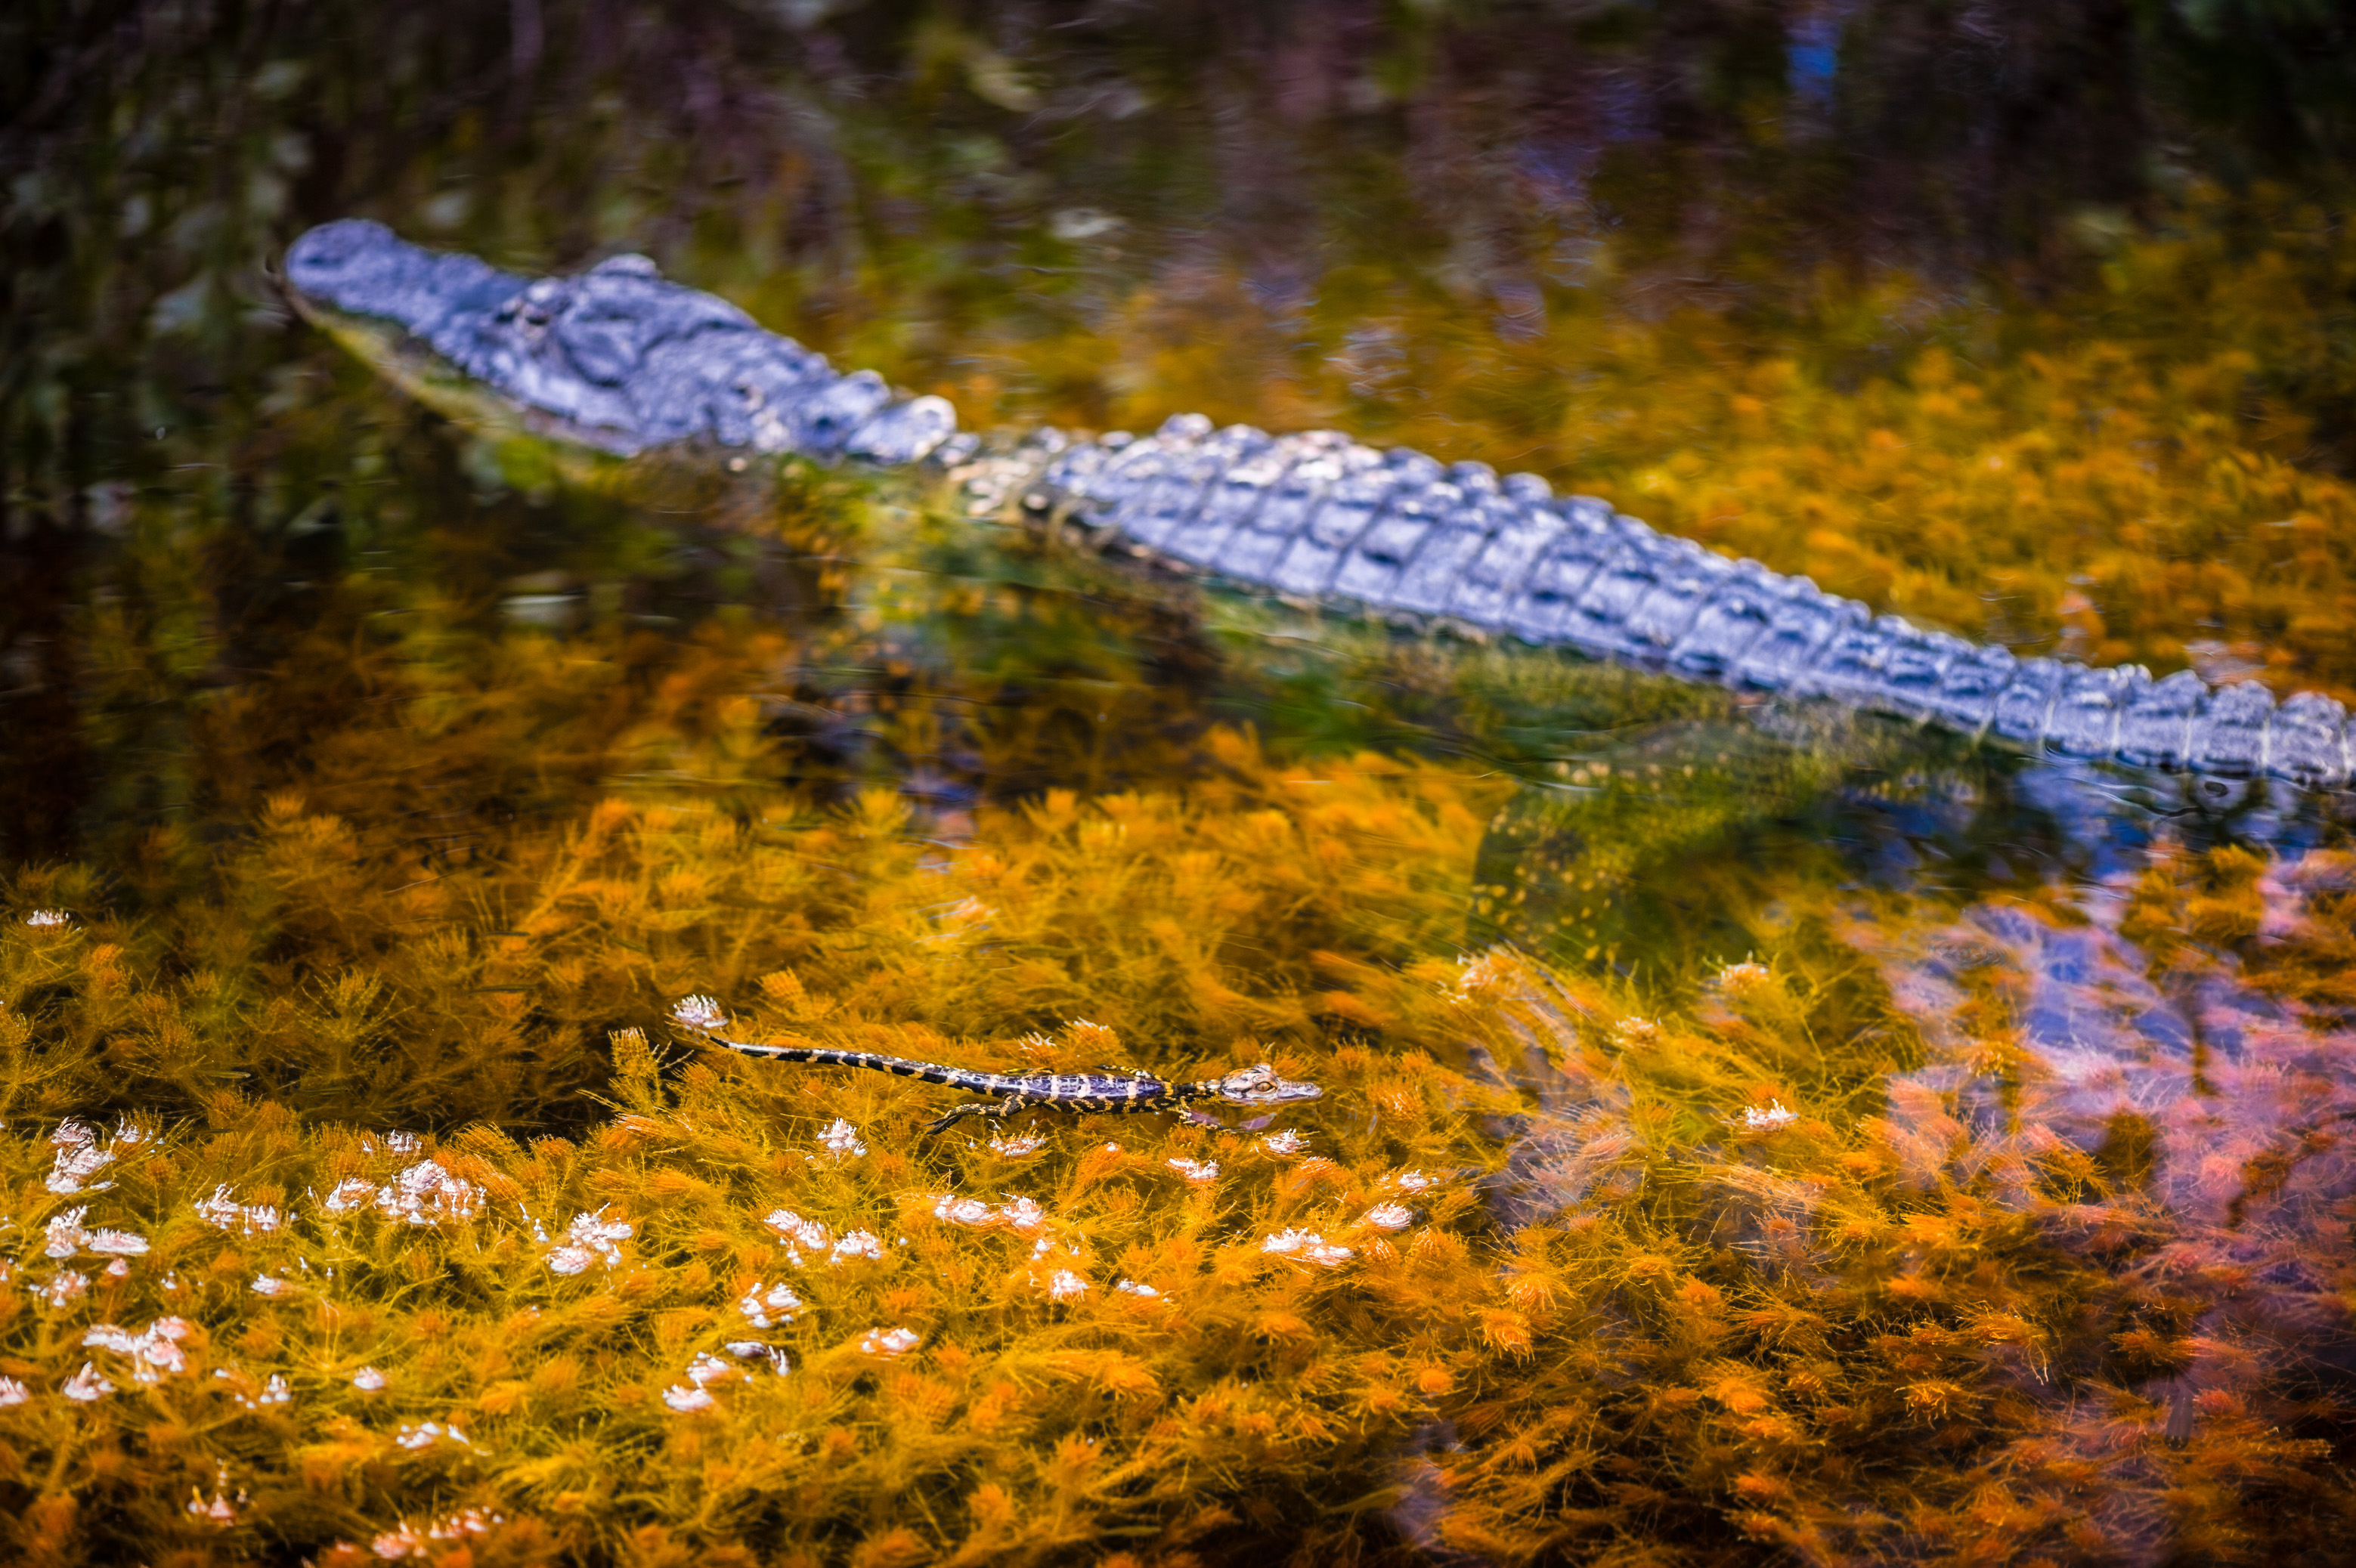 Etats-Unis, Amérique du nord, Floride, femelle Alligator d'Amérique (Alligator mississippiensis) et un de ses juvéniles nagent dans une rivière du Parc national des Everglades // USA, North America, Florida, female American Alligator (Alligator mississippiensis) and one of its juveniles swimming in a river in Everglades National Park